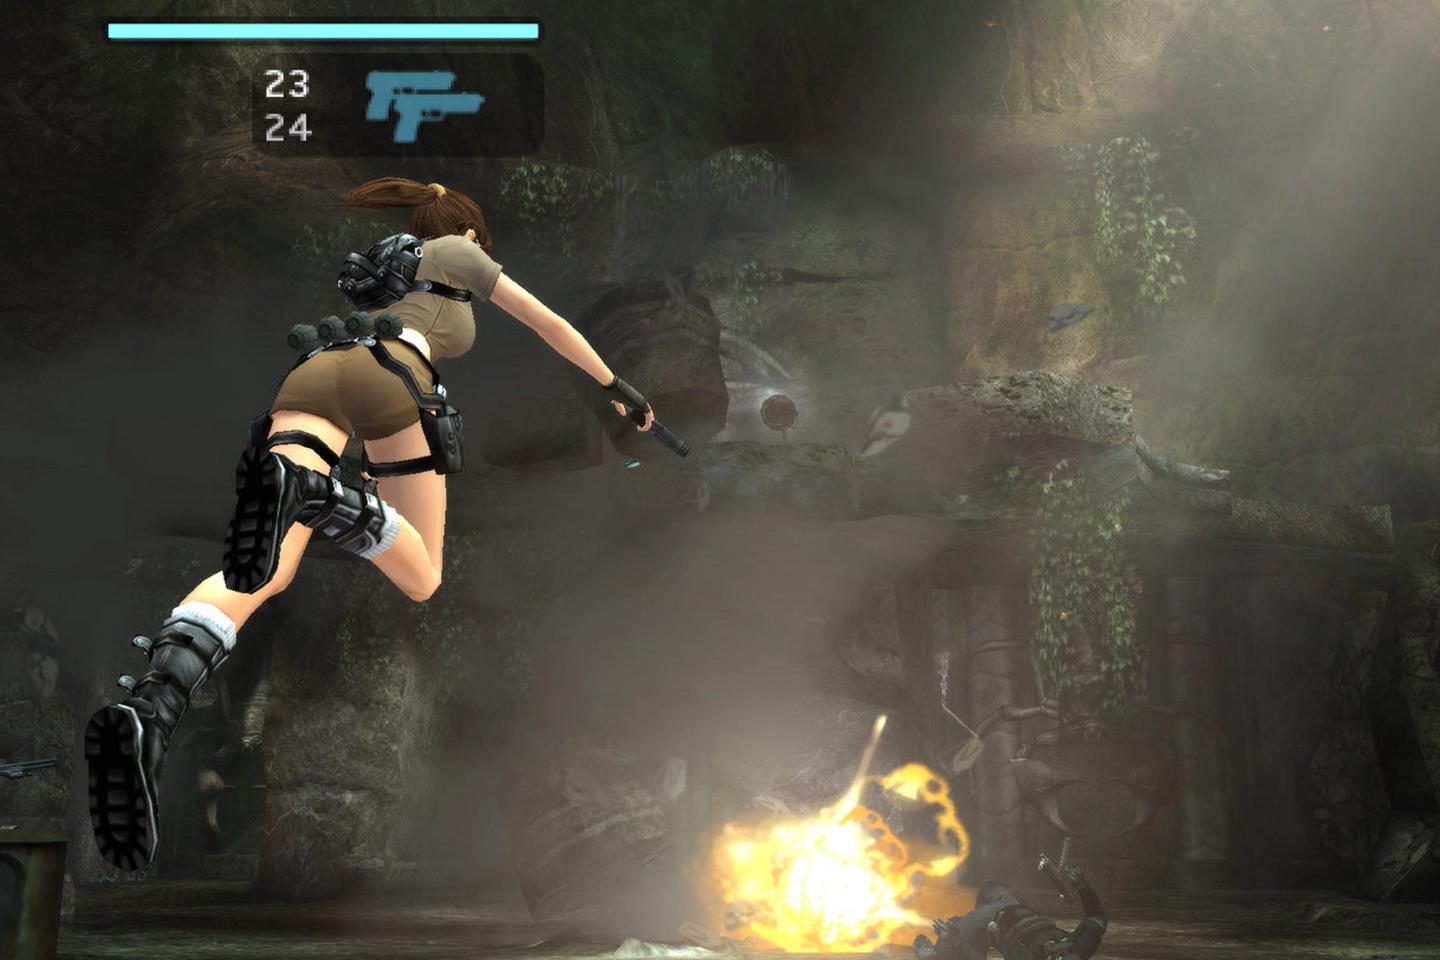 Lara jumping toward bonfire.